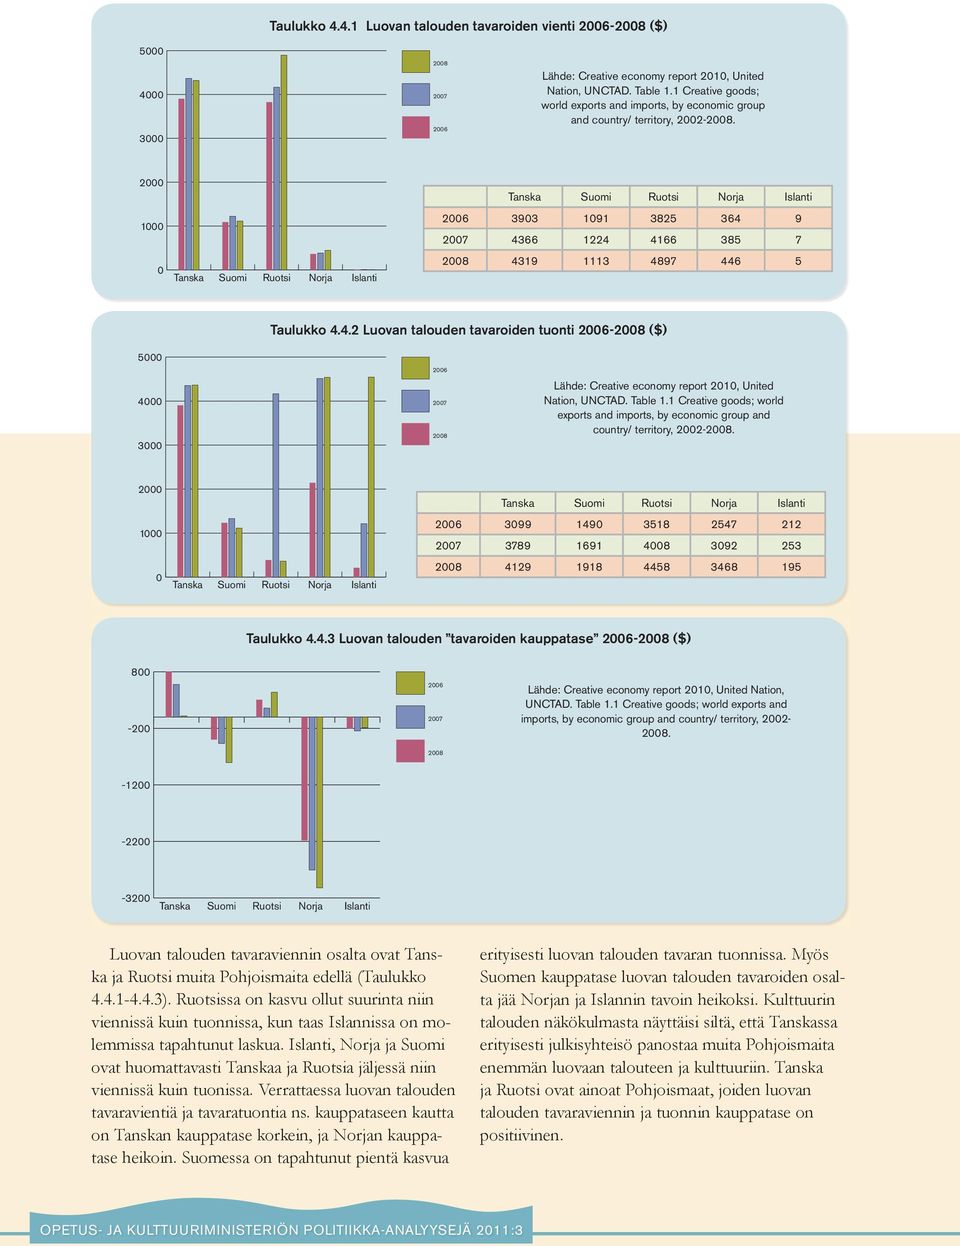 4.2 Luovan talouden tavaroiden tuonti 26-28 ($) 26 27 28 Lähde: Creative economy report 21, United Nation, UNCTAD. Table 1.